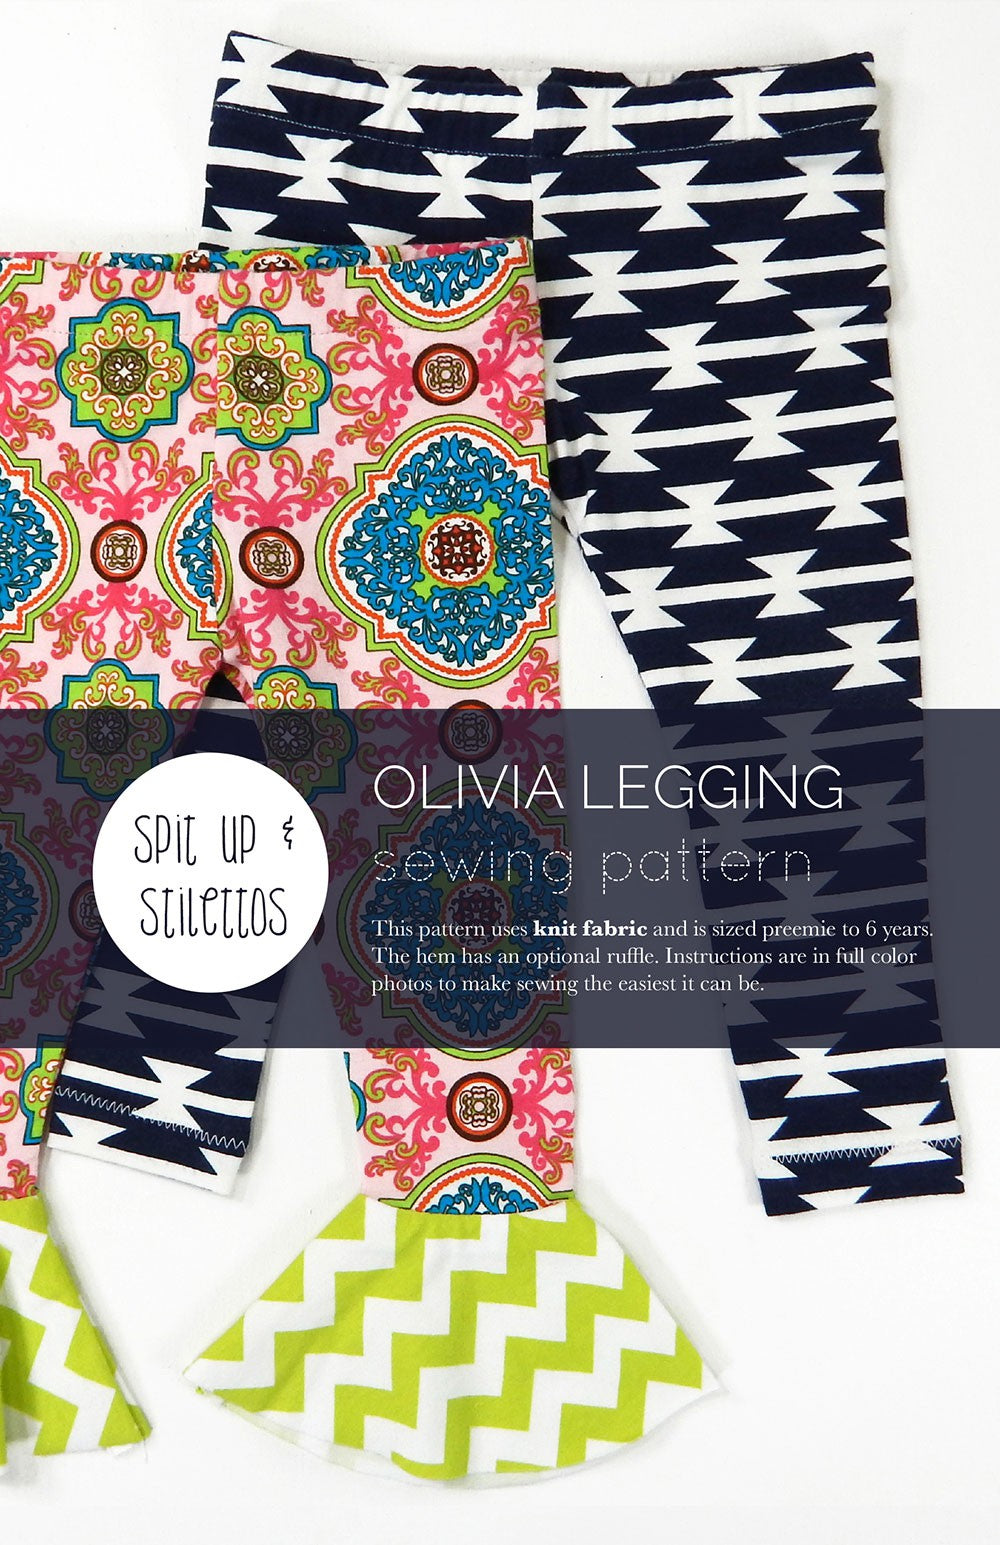 Olivia Legging Preemie - 6 Years Sewing Pattern by Lauren of Peanut Patterns